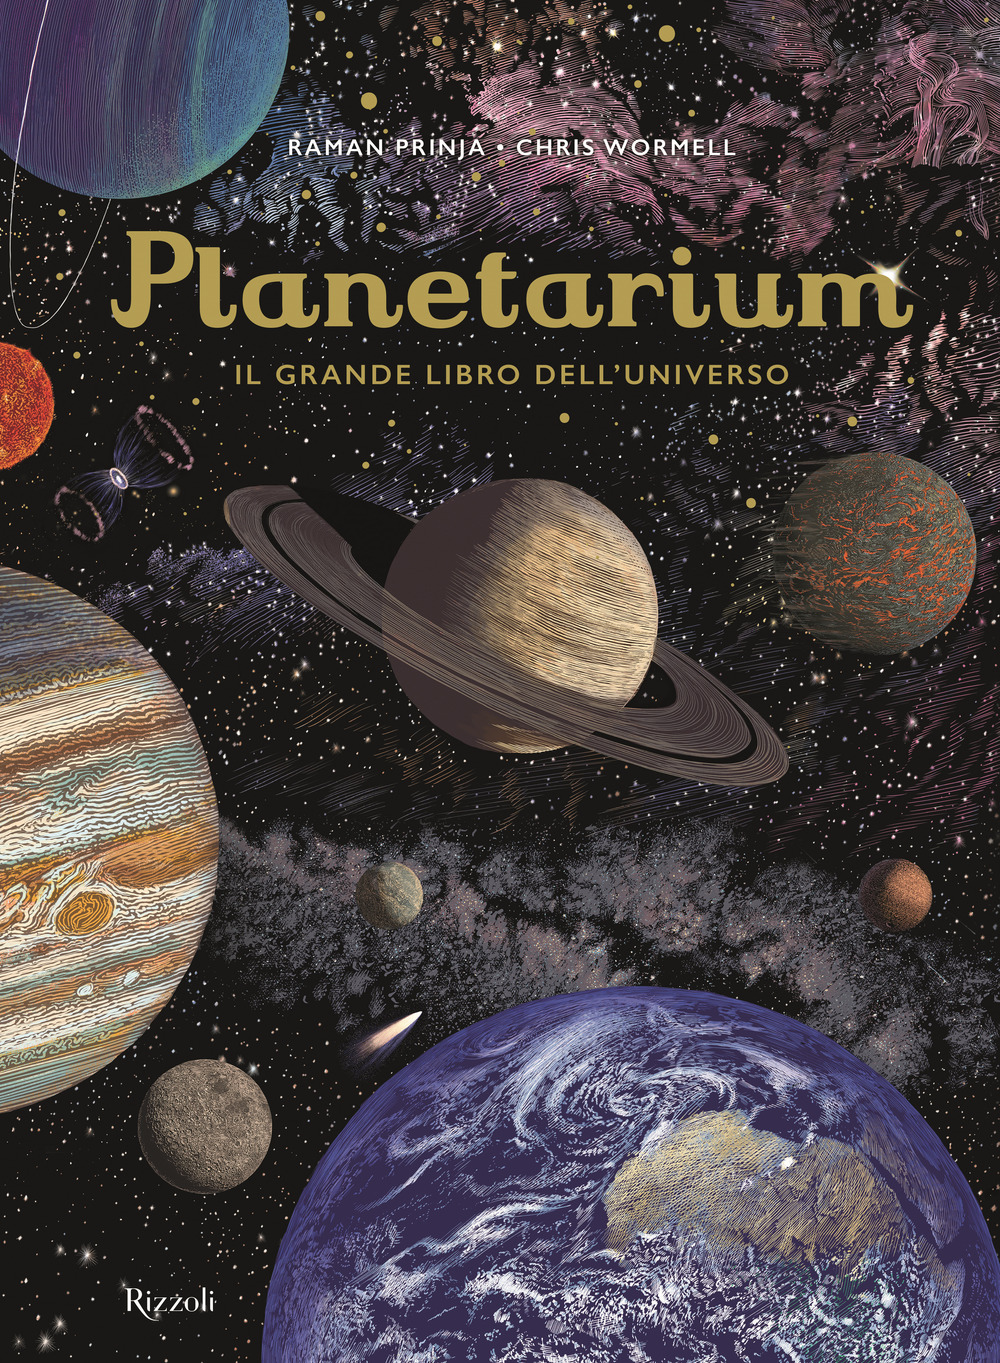 Libri Christopher Wormell / Raman Prinja - Planetarium NUOVO SIGILLATO, EDIZIONE DEL 13/11/2018 SUBITO DISPONIBILE